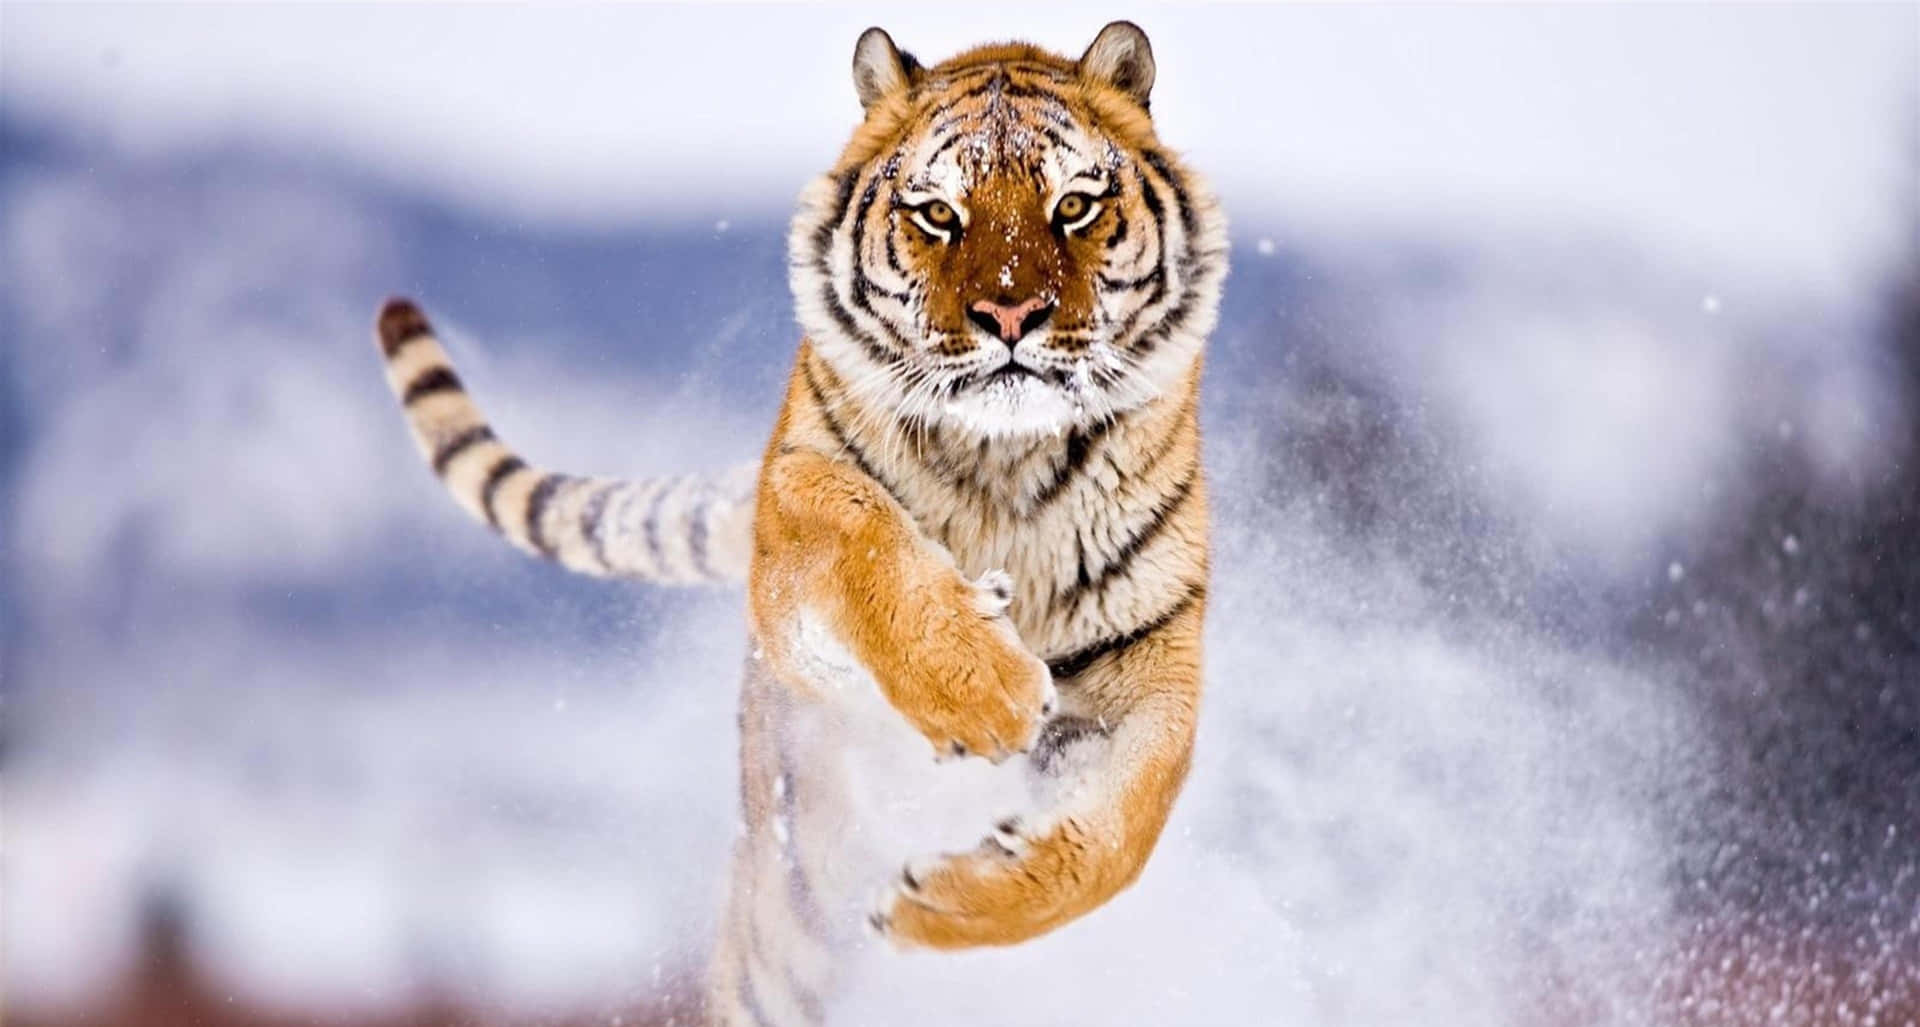 Enmajestætisk Skotsk-bengalsk Tiger, Der Står I Højt Græs.